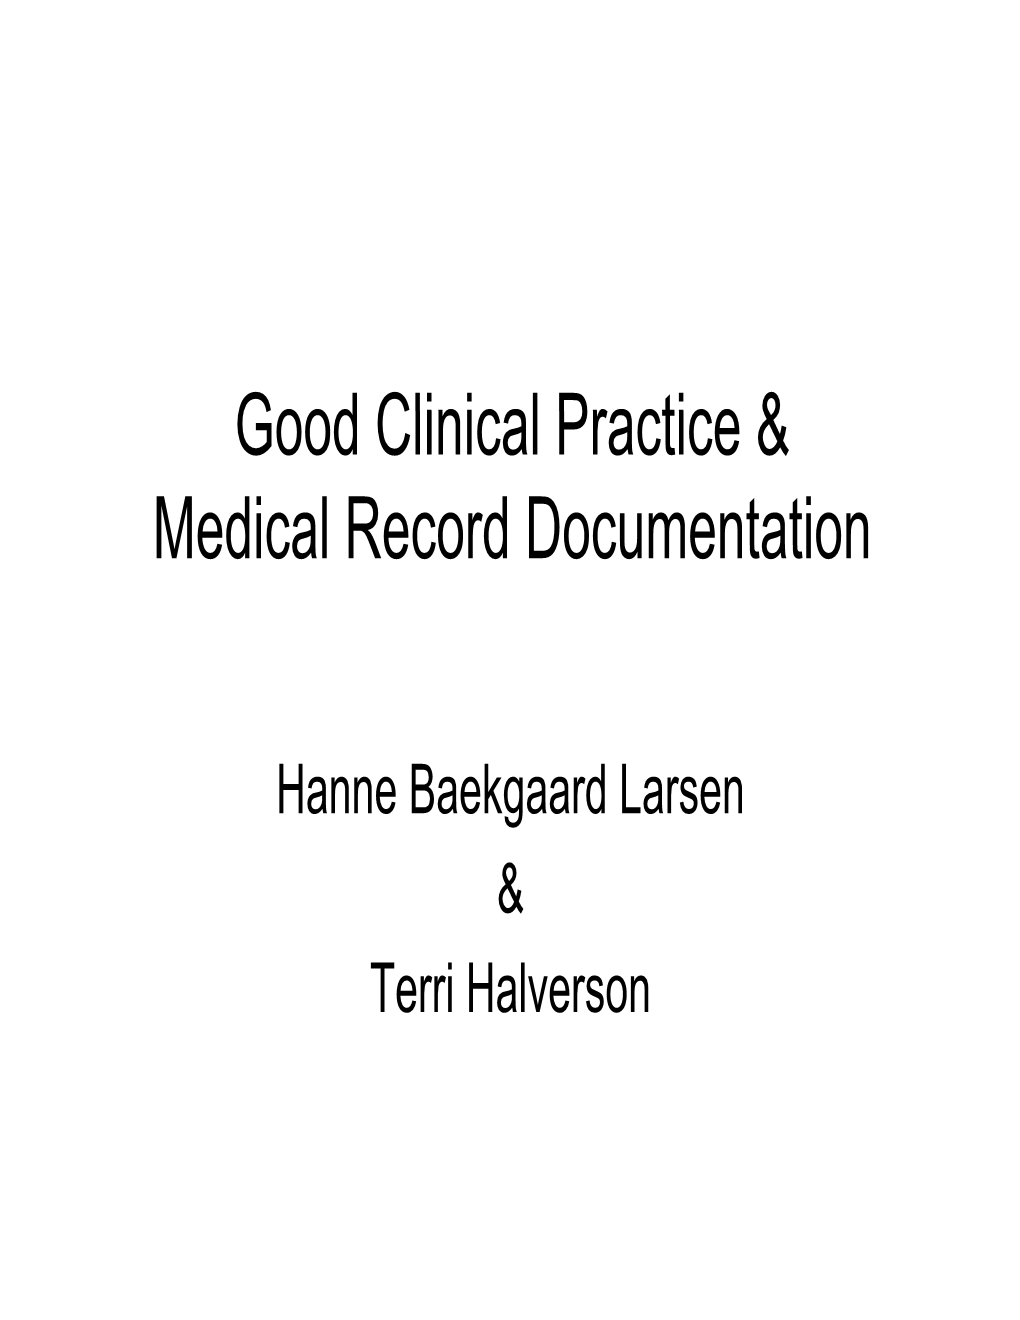 Good Clinical Practice & Good Clinical Practice & Medical